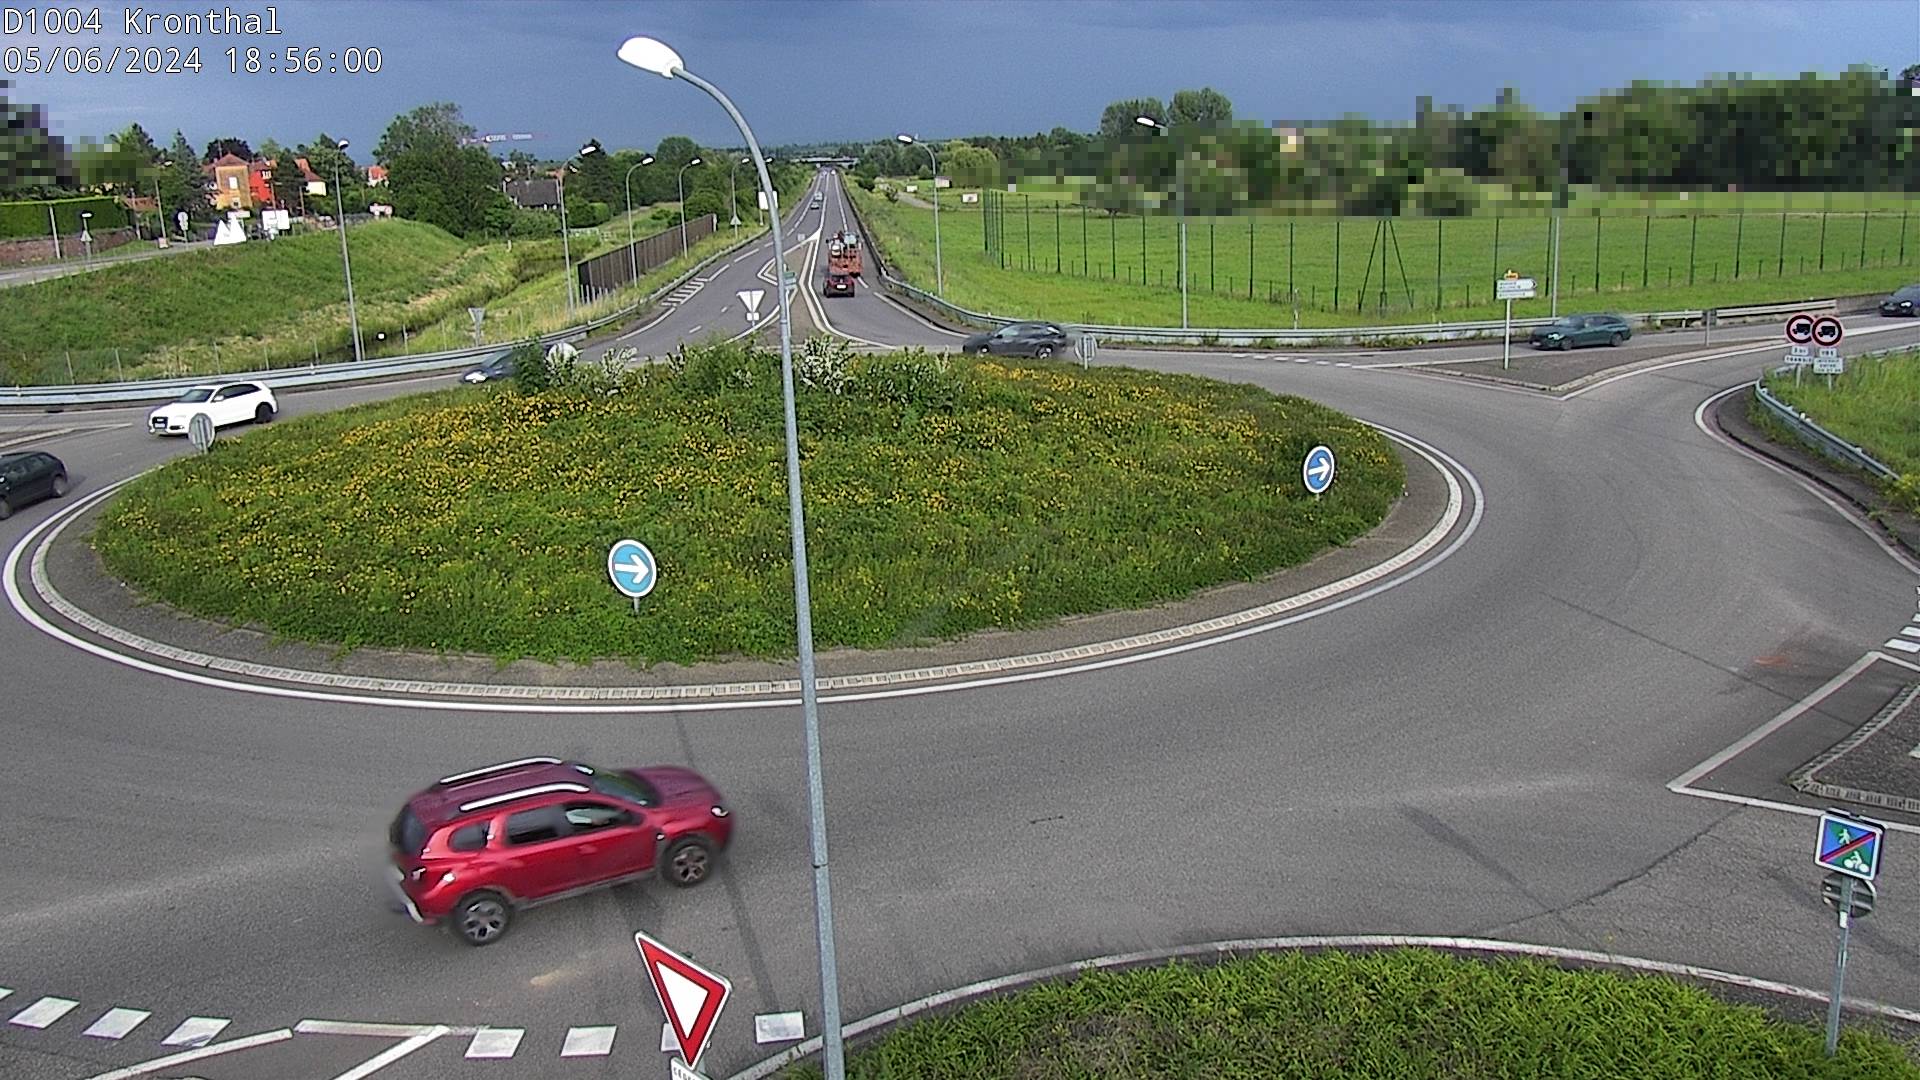 <h2>Webcam à la sortie de Marlenheim sur le rond-point joignant la D1002, la D422 et la D2004</h2>